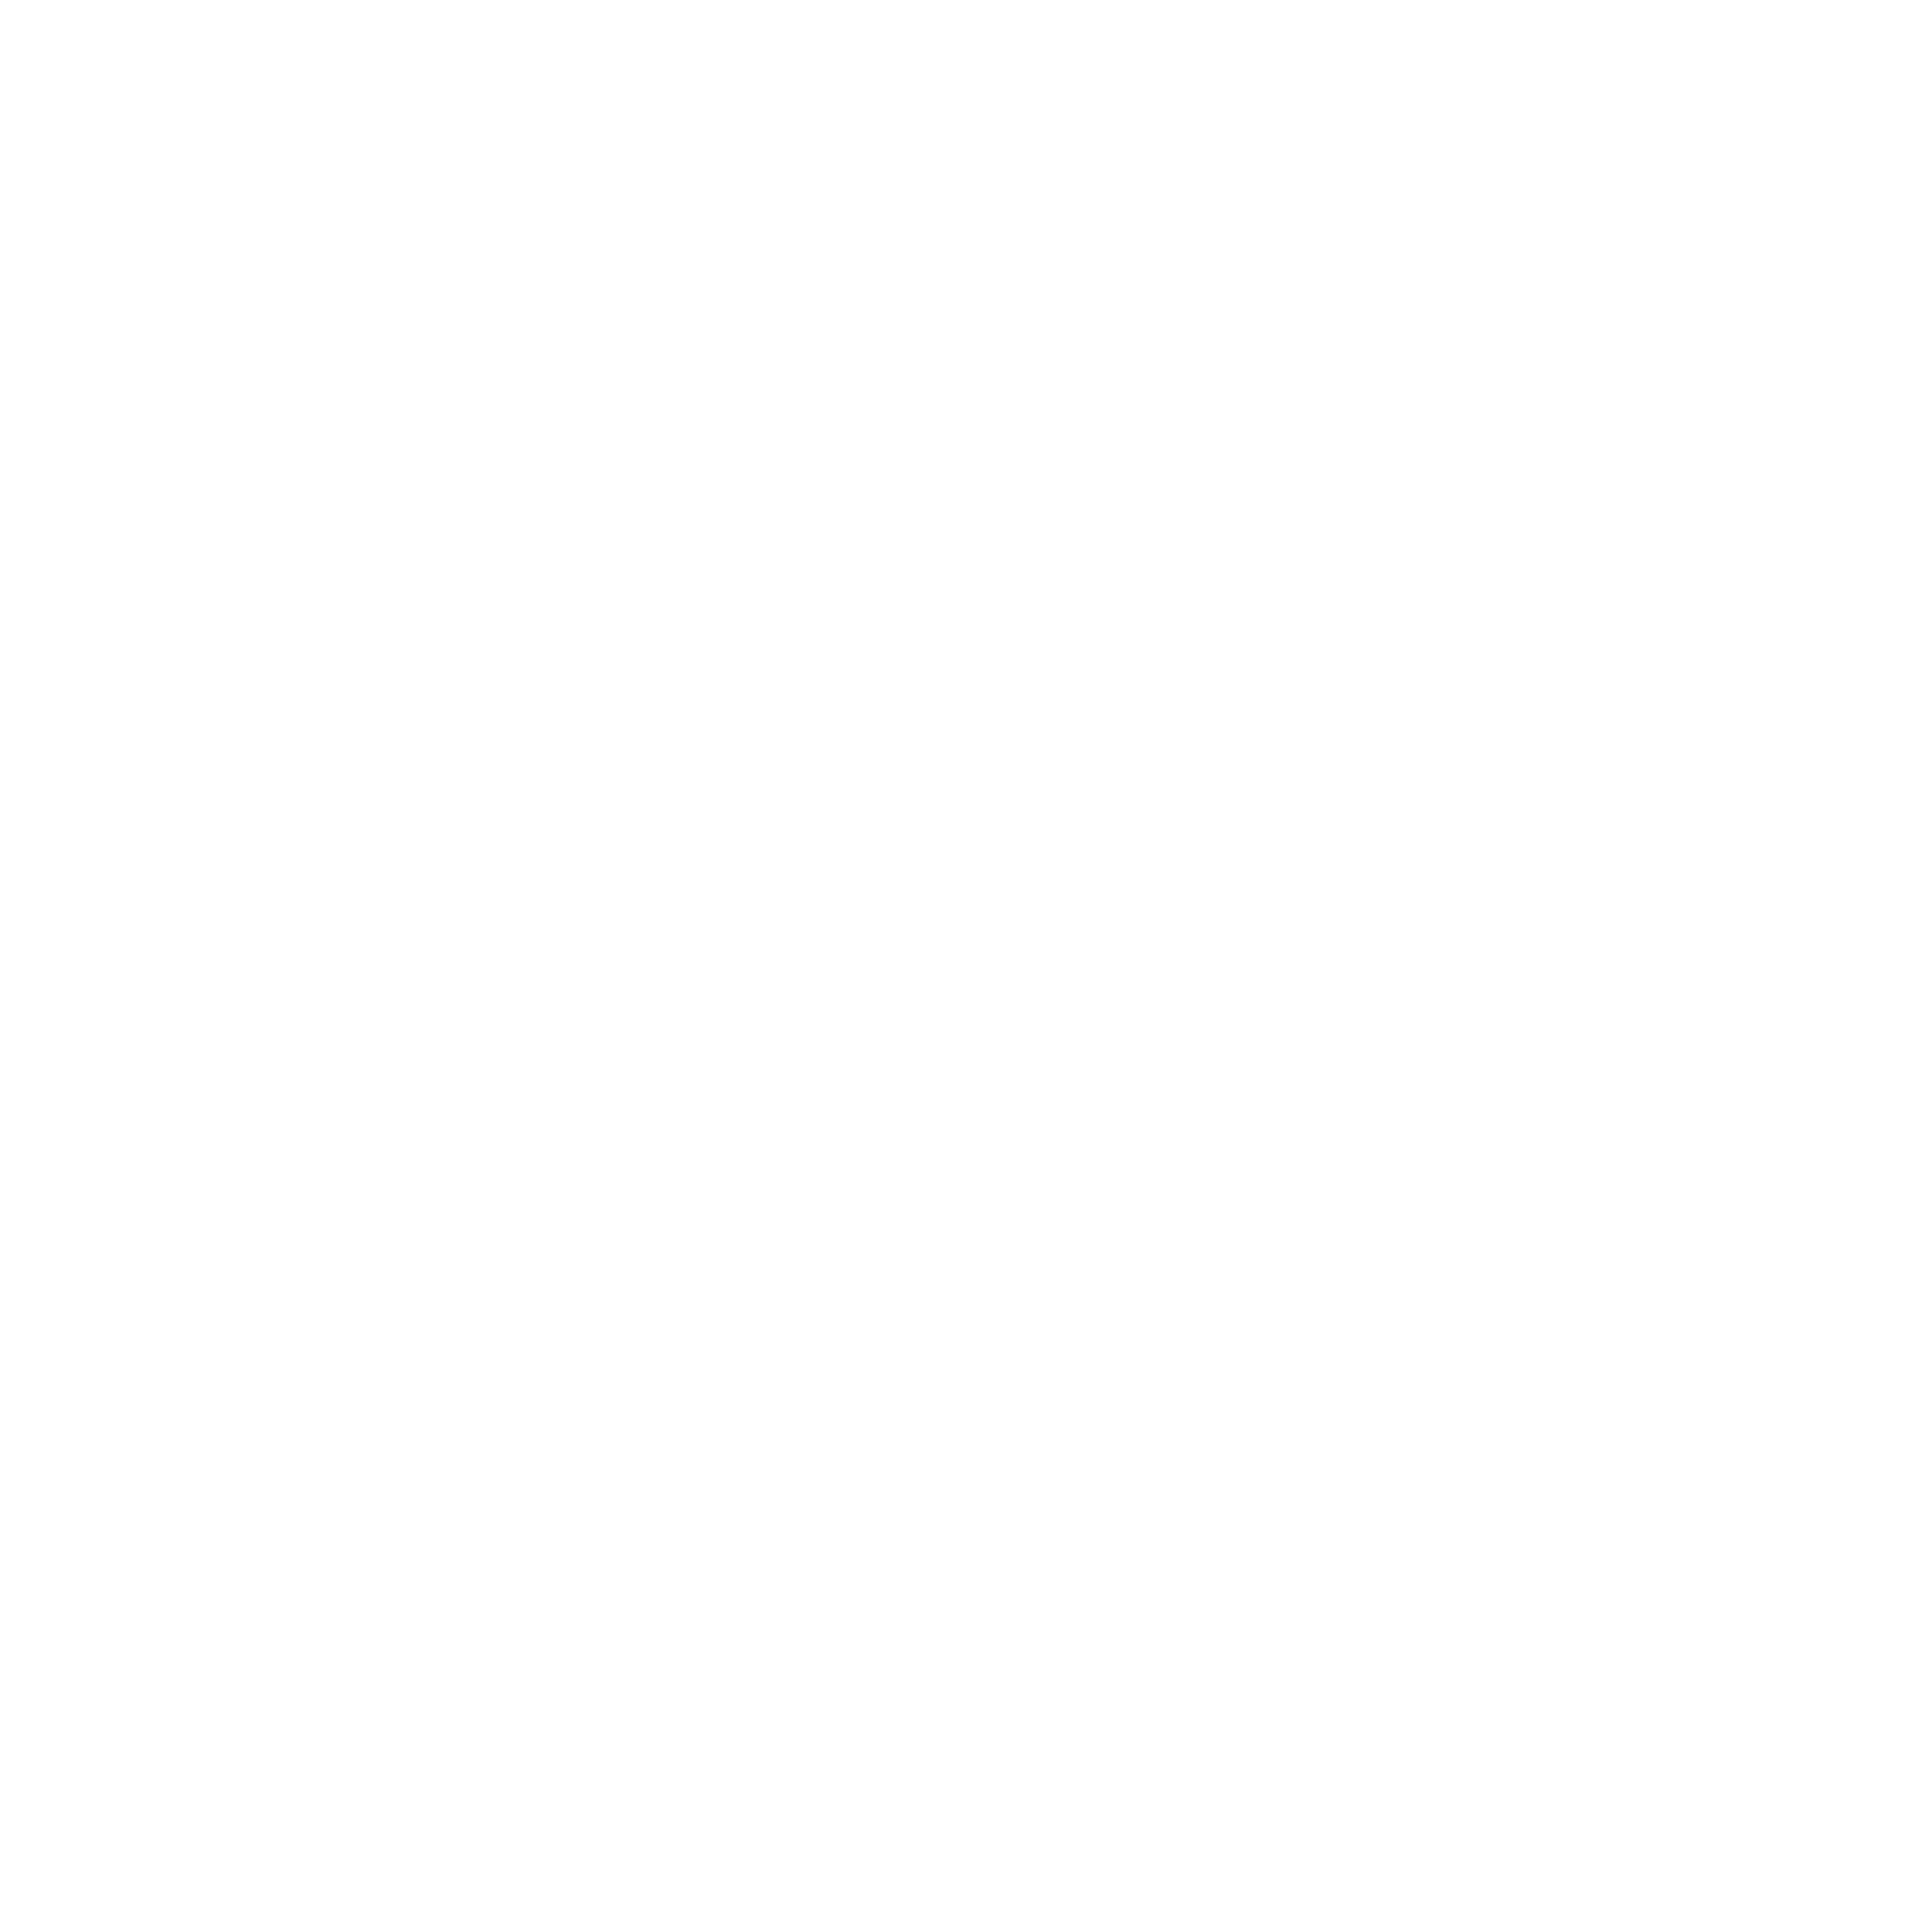 VICOLO39